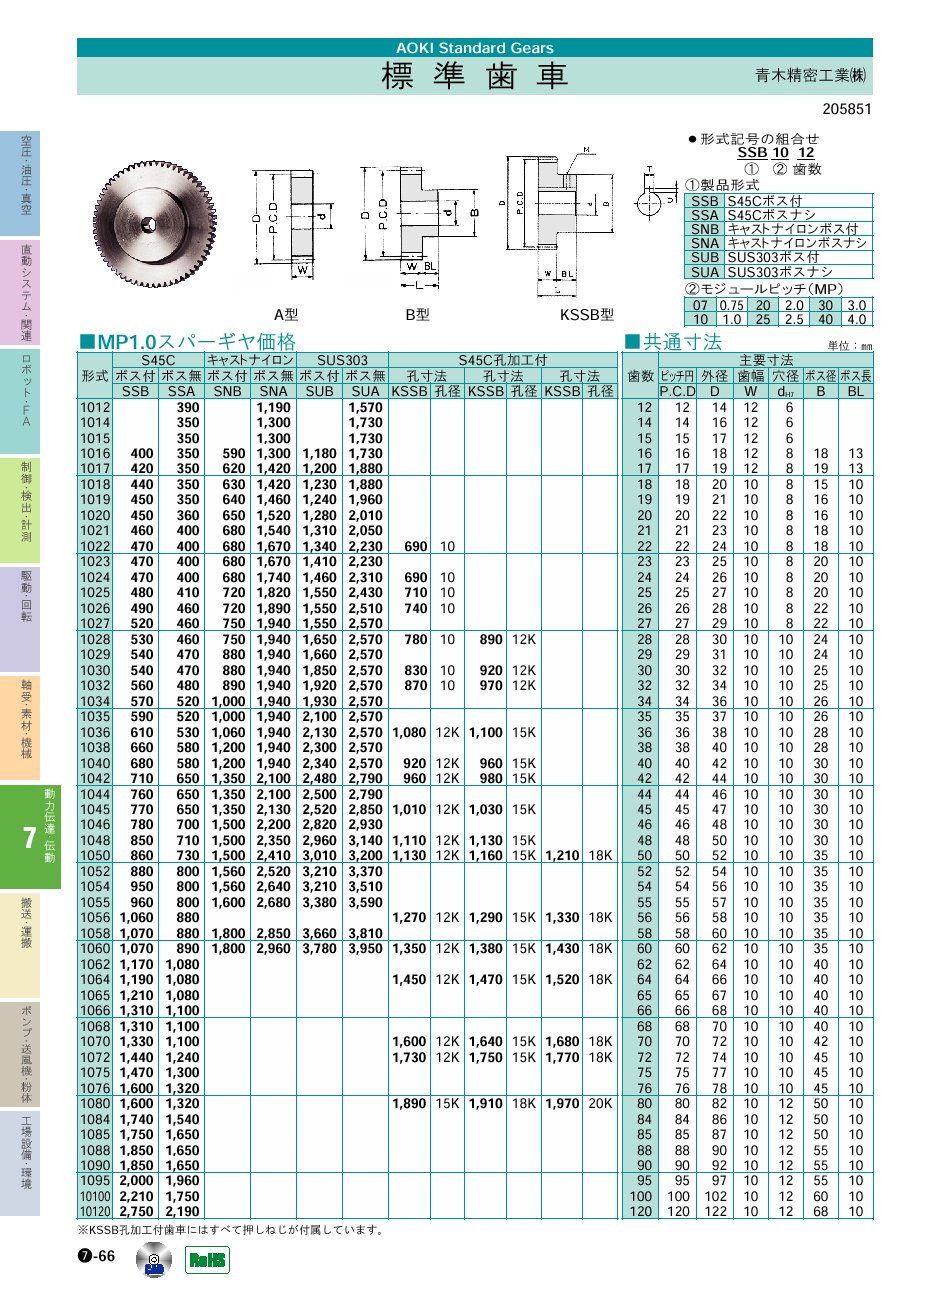 青木精密工業(株) 標準歯車　動力伝達・伝動機器 P07-066 価格